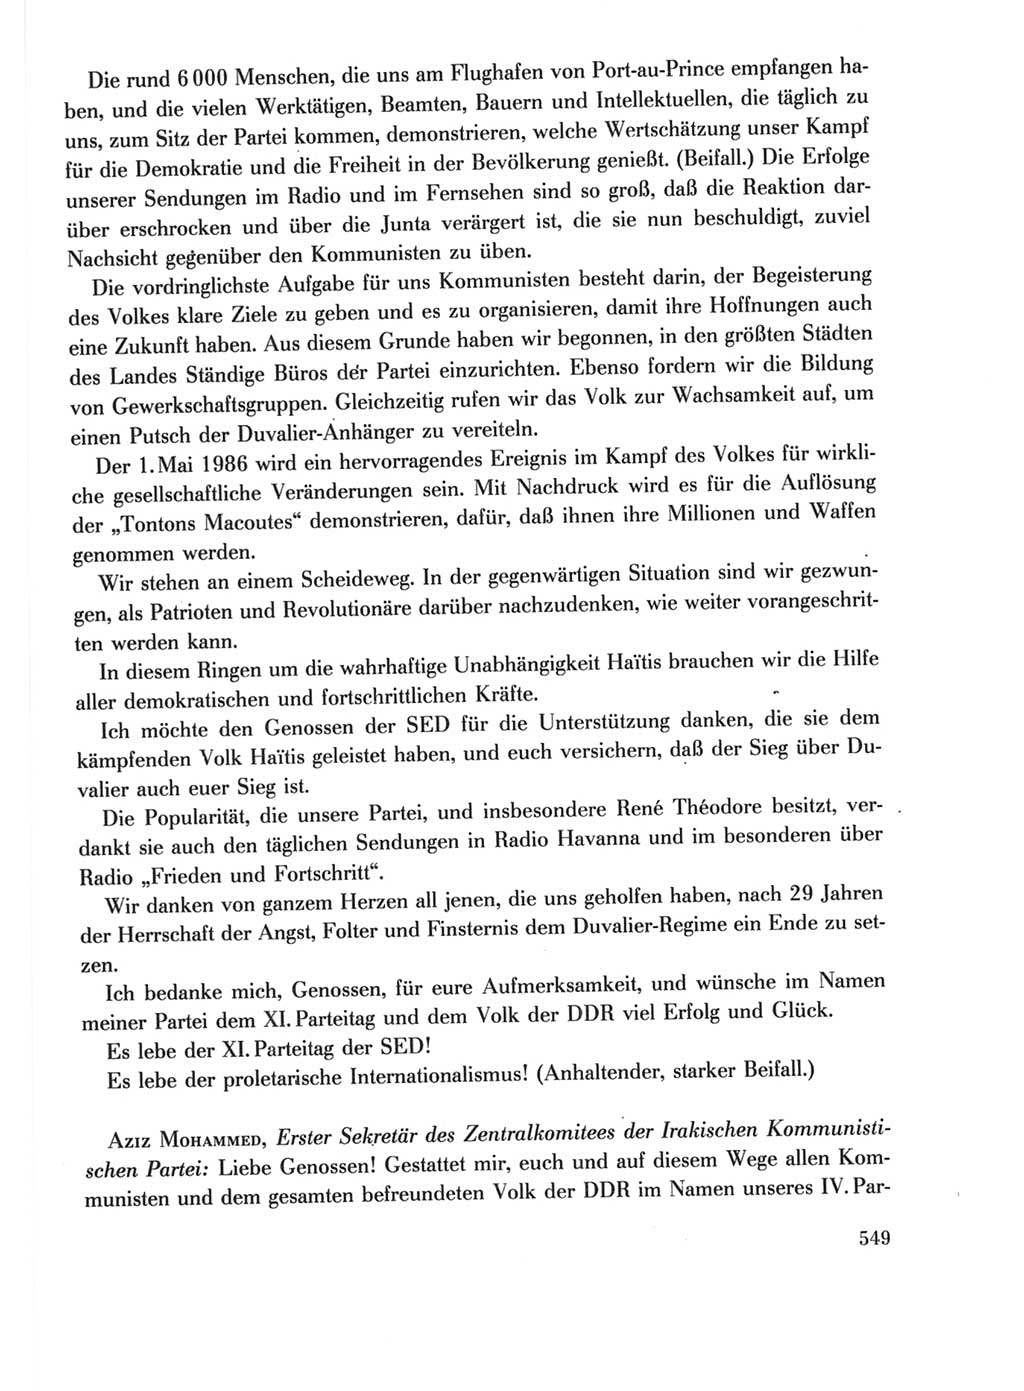 Protokoll der Verhandlungen des Ⅺ. Parteitages der Sozialistischen Einheitspartei Deutschlands (SED) [Deutsche Demokratische Republik (DDR)] 1986, Seite 549